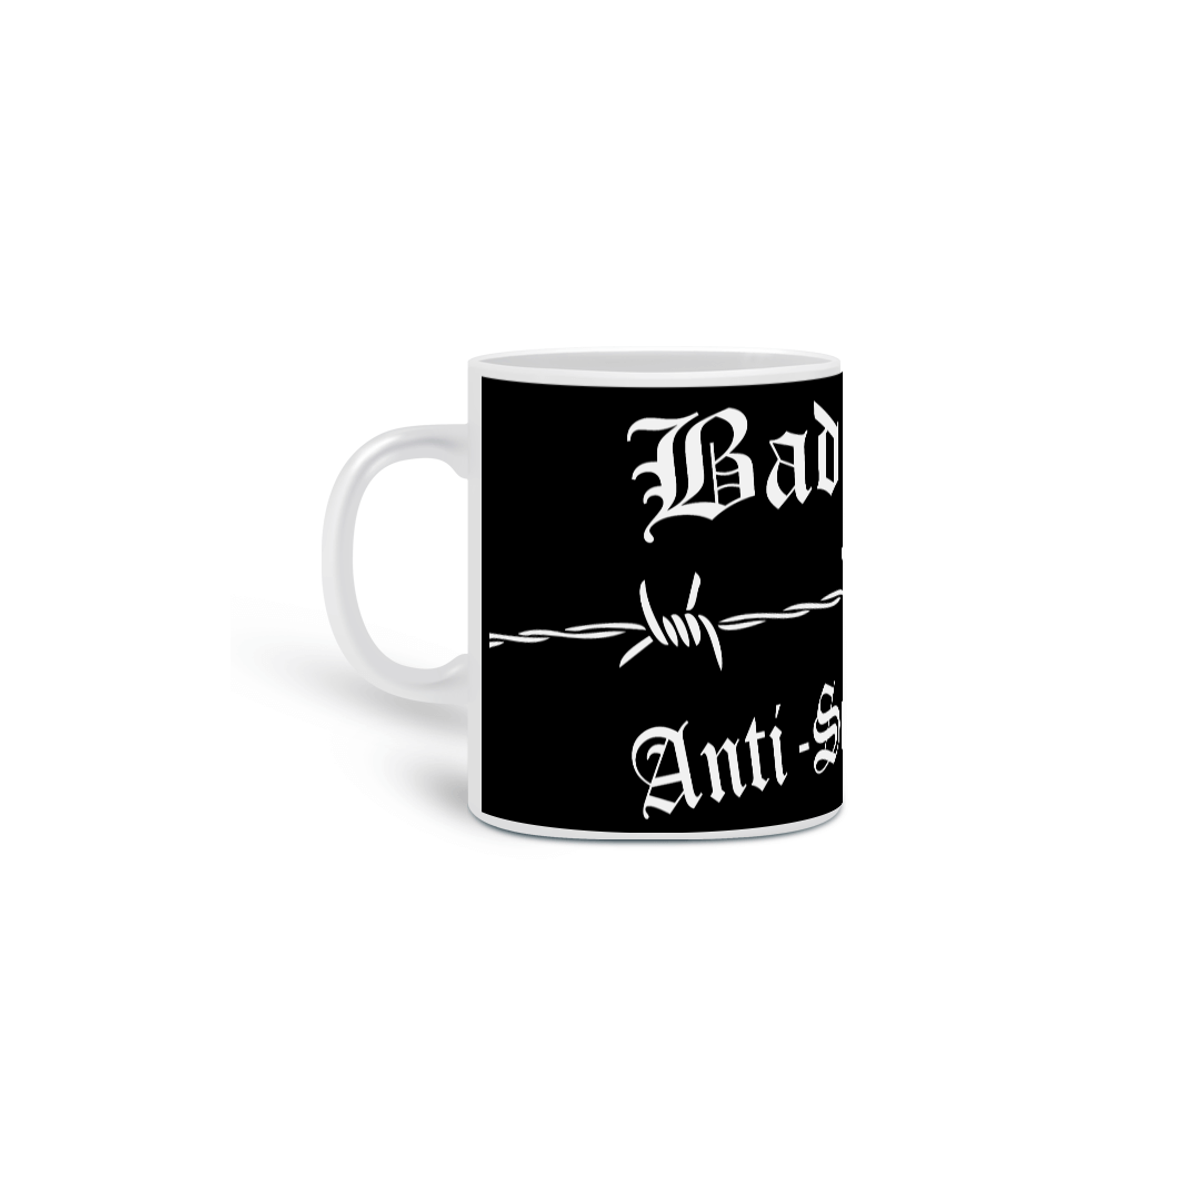 Nome do produto: BadGirls Mug 2